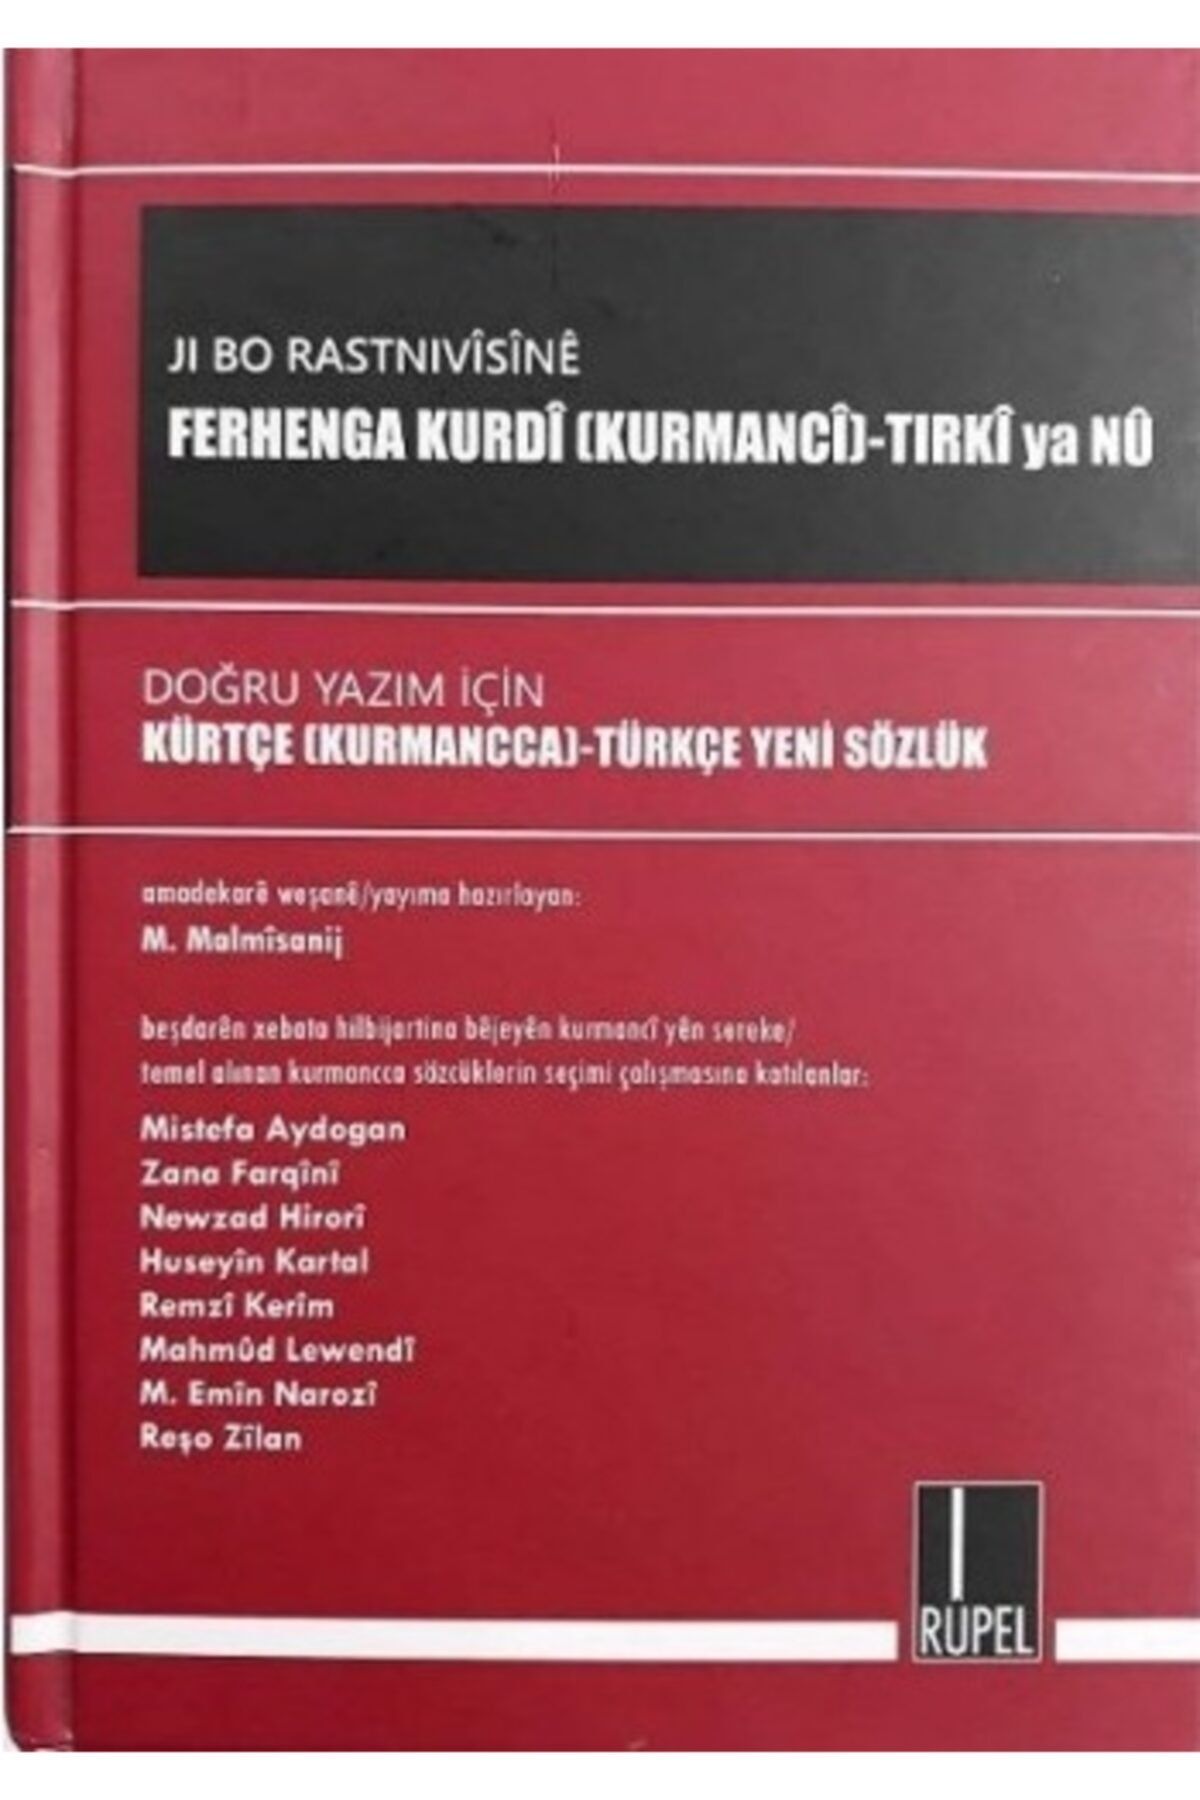 Rupel Basım Yayın Doğru Yazım Için Ferhanga Kurdî (kurmancî)-tirkî Türkçe-kürtçe Sözlük (özel Basım)